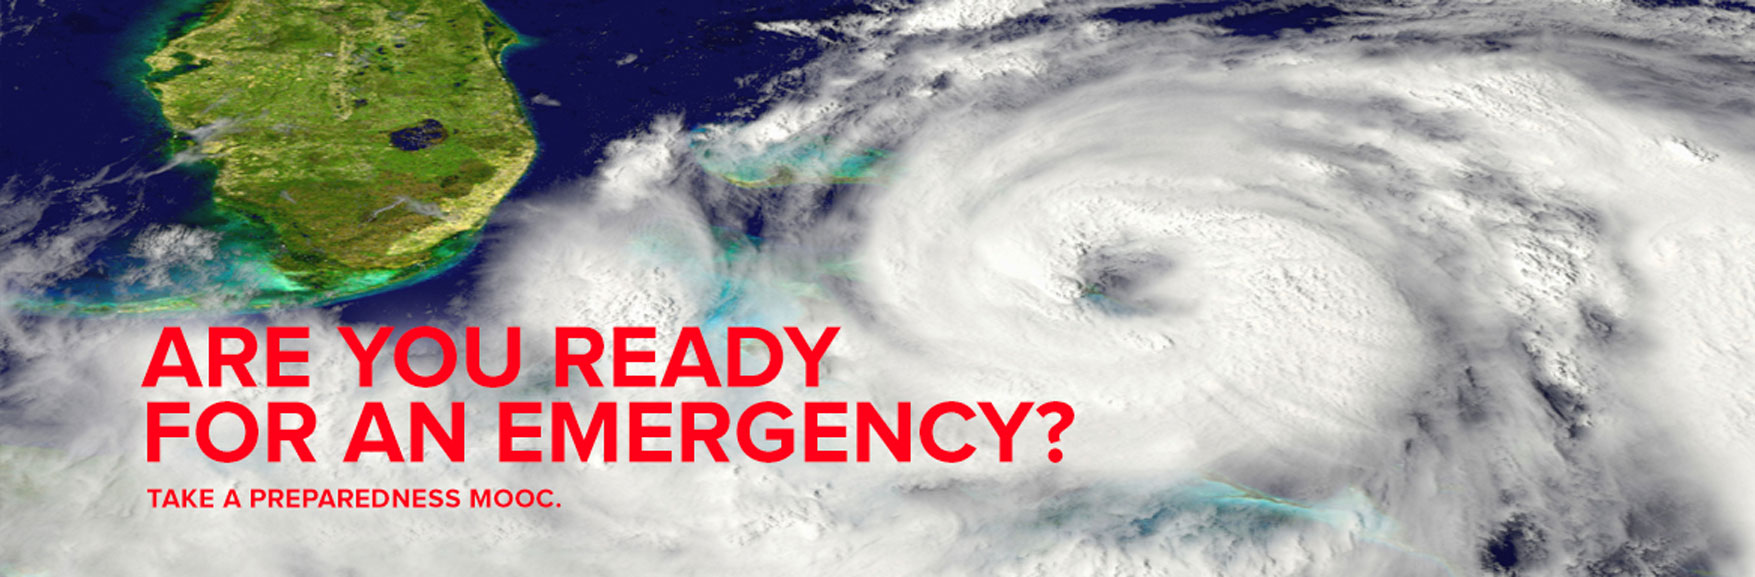 Emergency Preparedness Home page